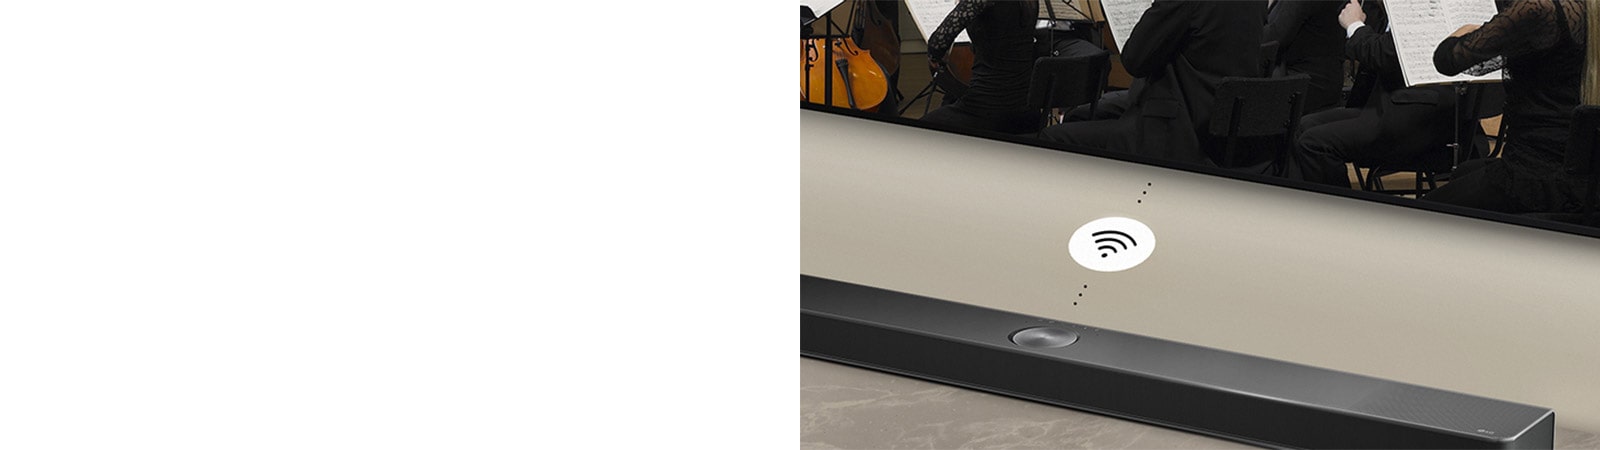 Đoạn video cho thấy LG Sound Bar SC9S có thể kết nối không dây với TV có sẵn ở phía bên phải.